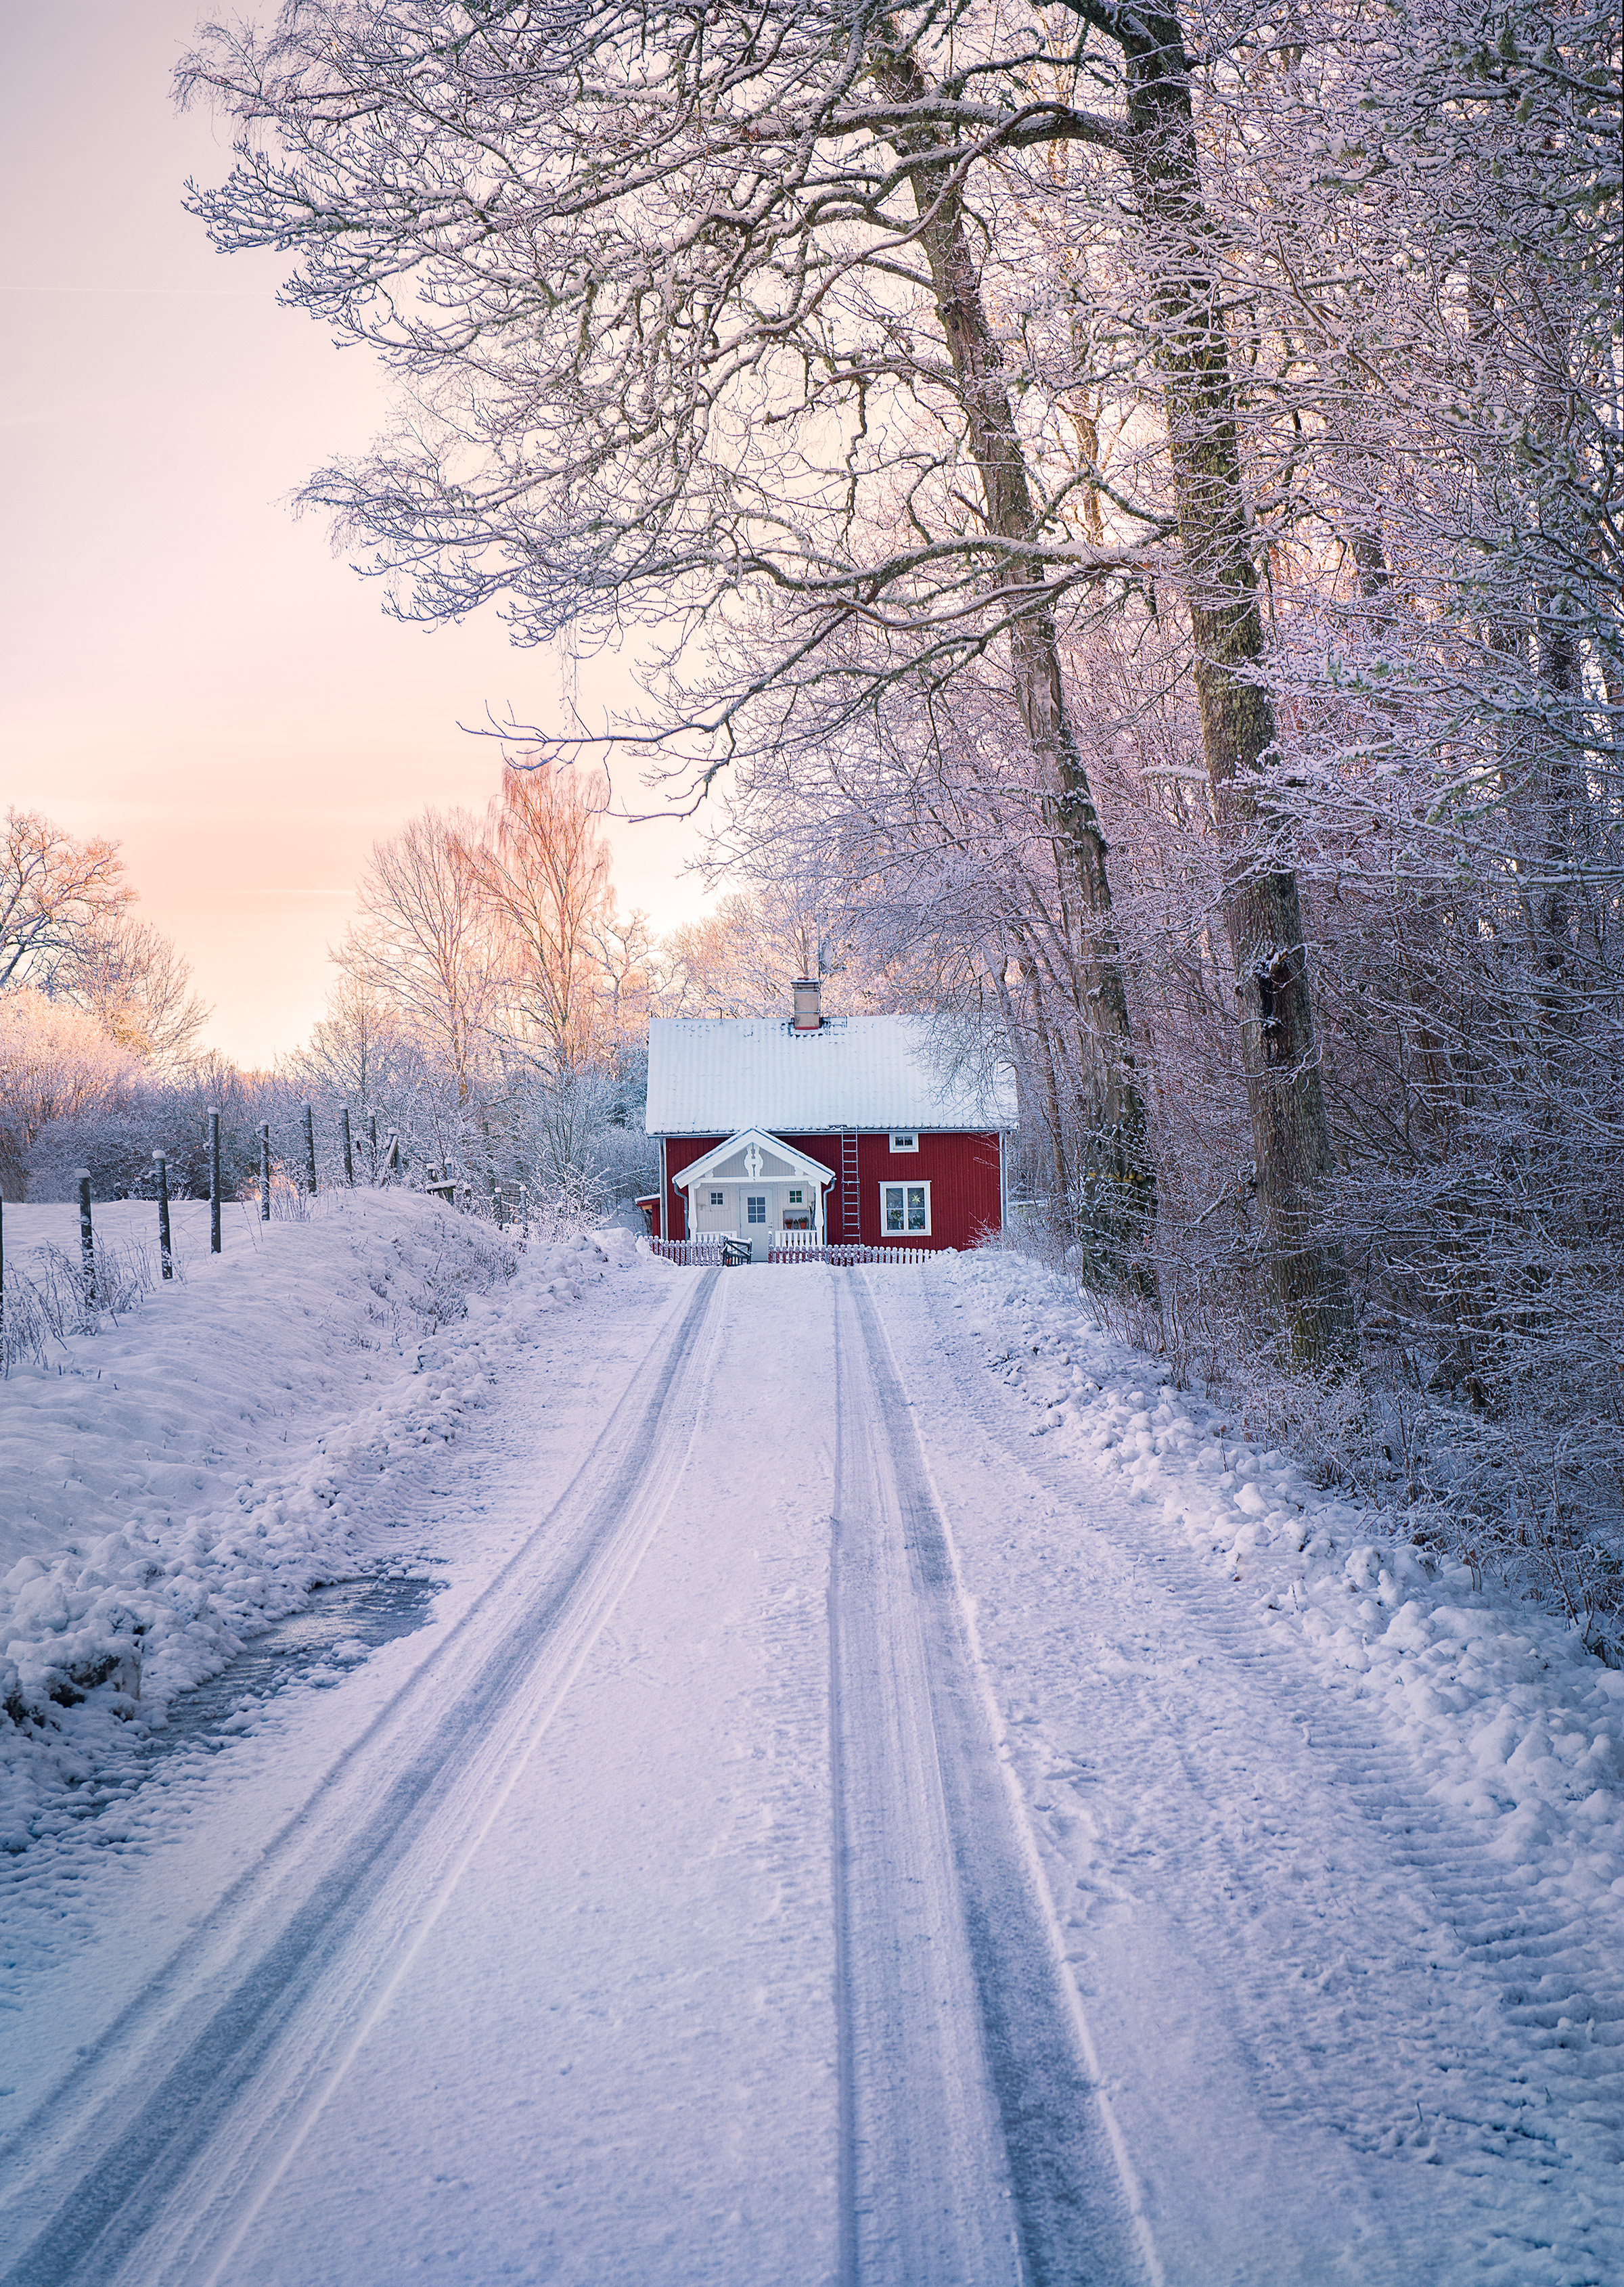 Vinter scen i Sverige med rött hus